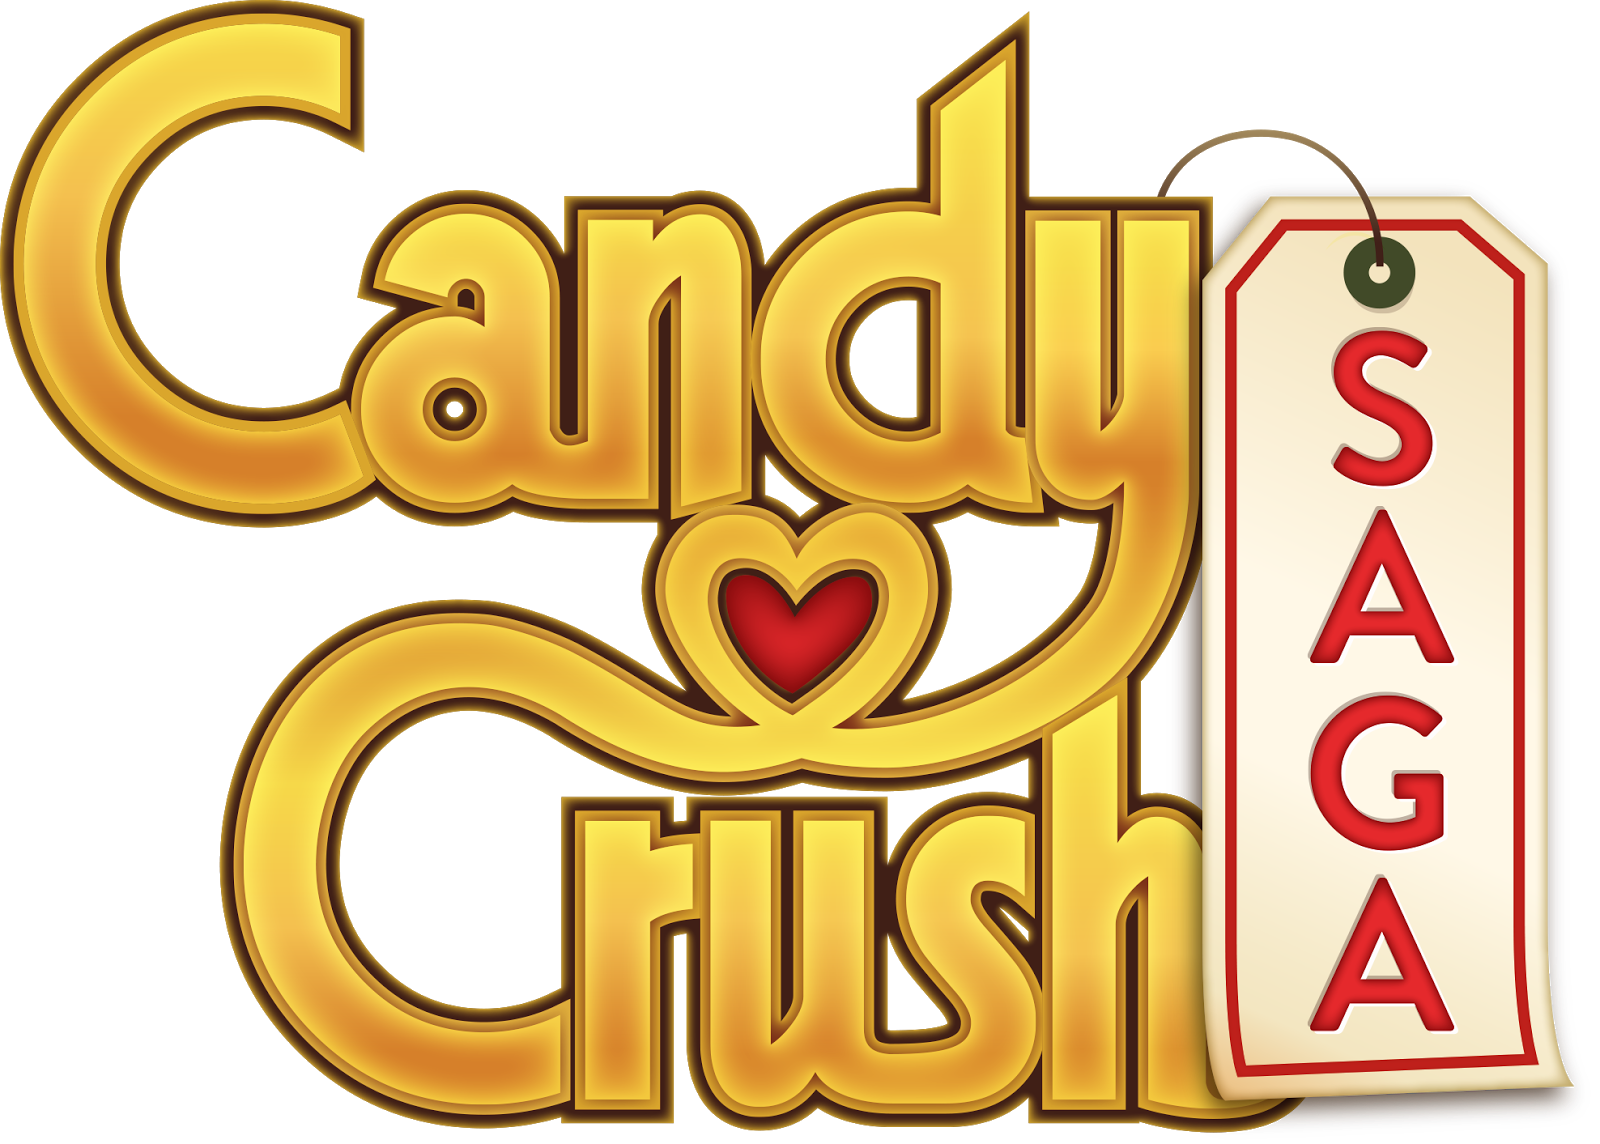 Candy Crush Saga v1.40.0 Mod By Rajeshnxboyz RajeshnXboyz